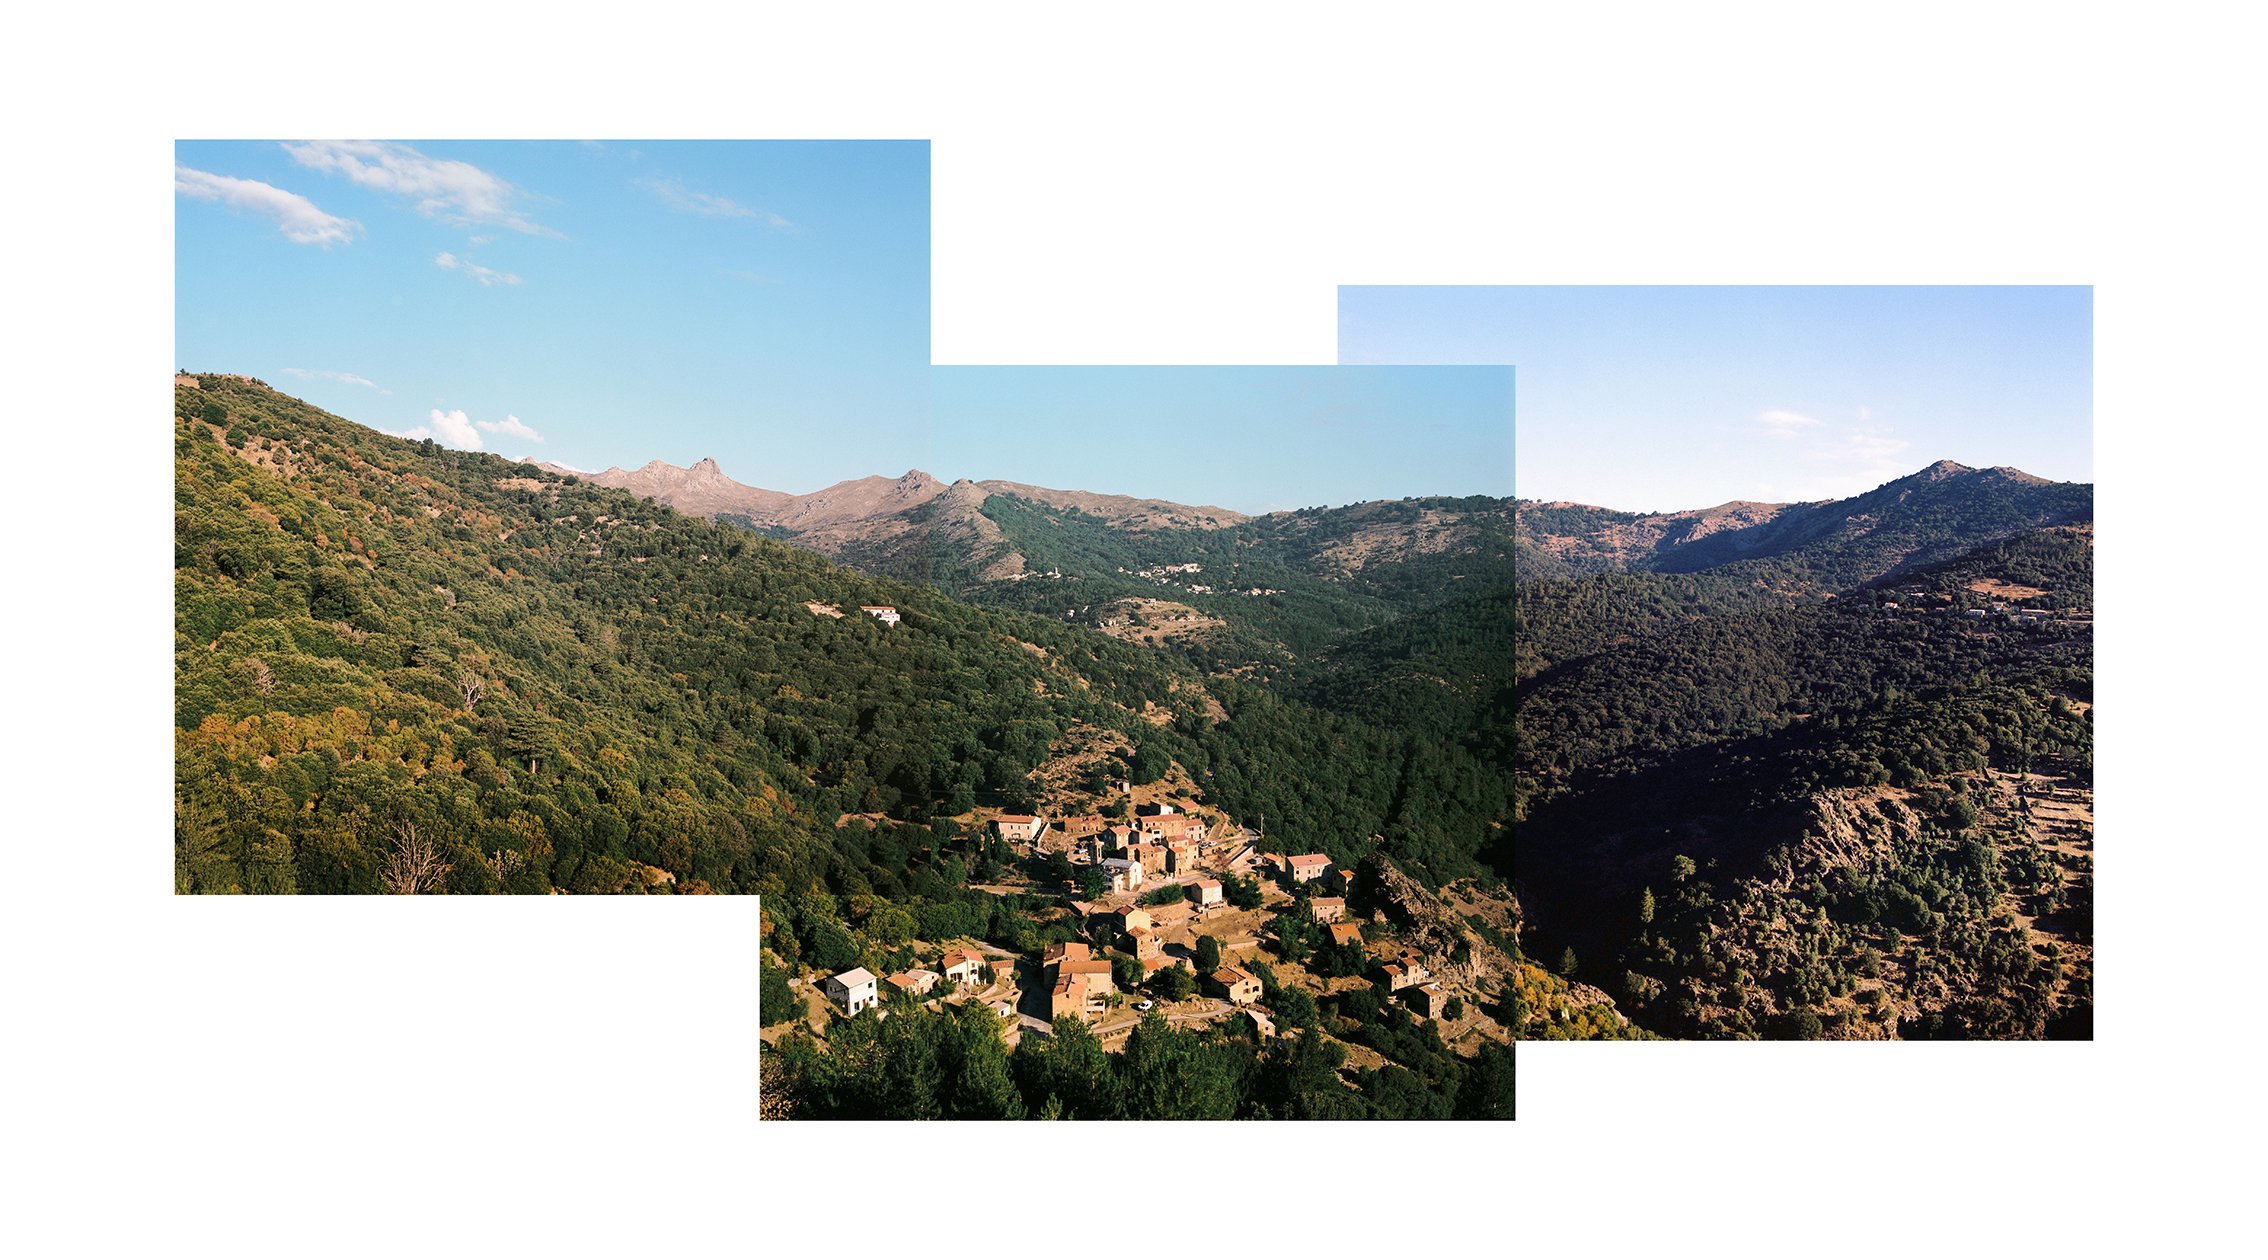  Mausoléo, commune la moins densément peuplée de la région Corse. 